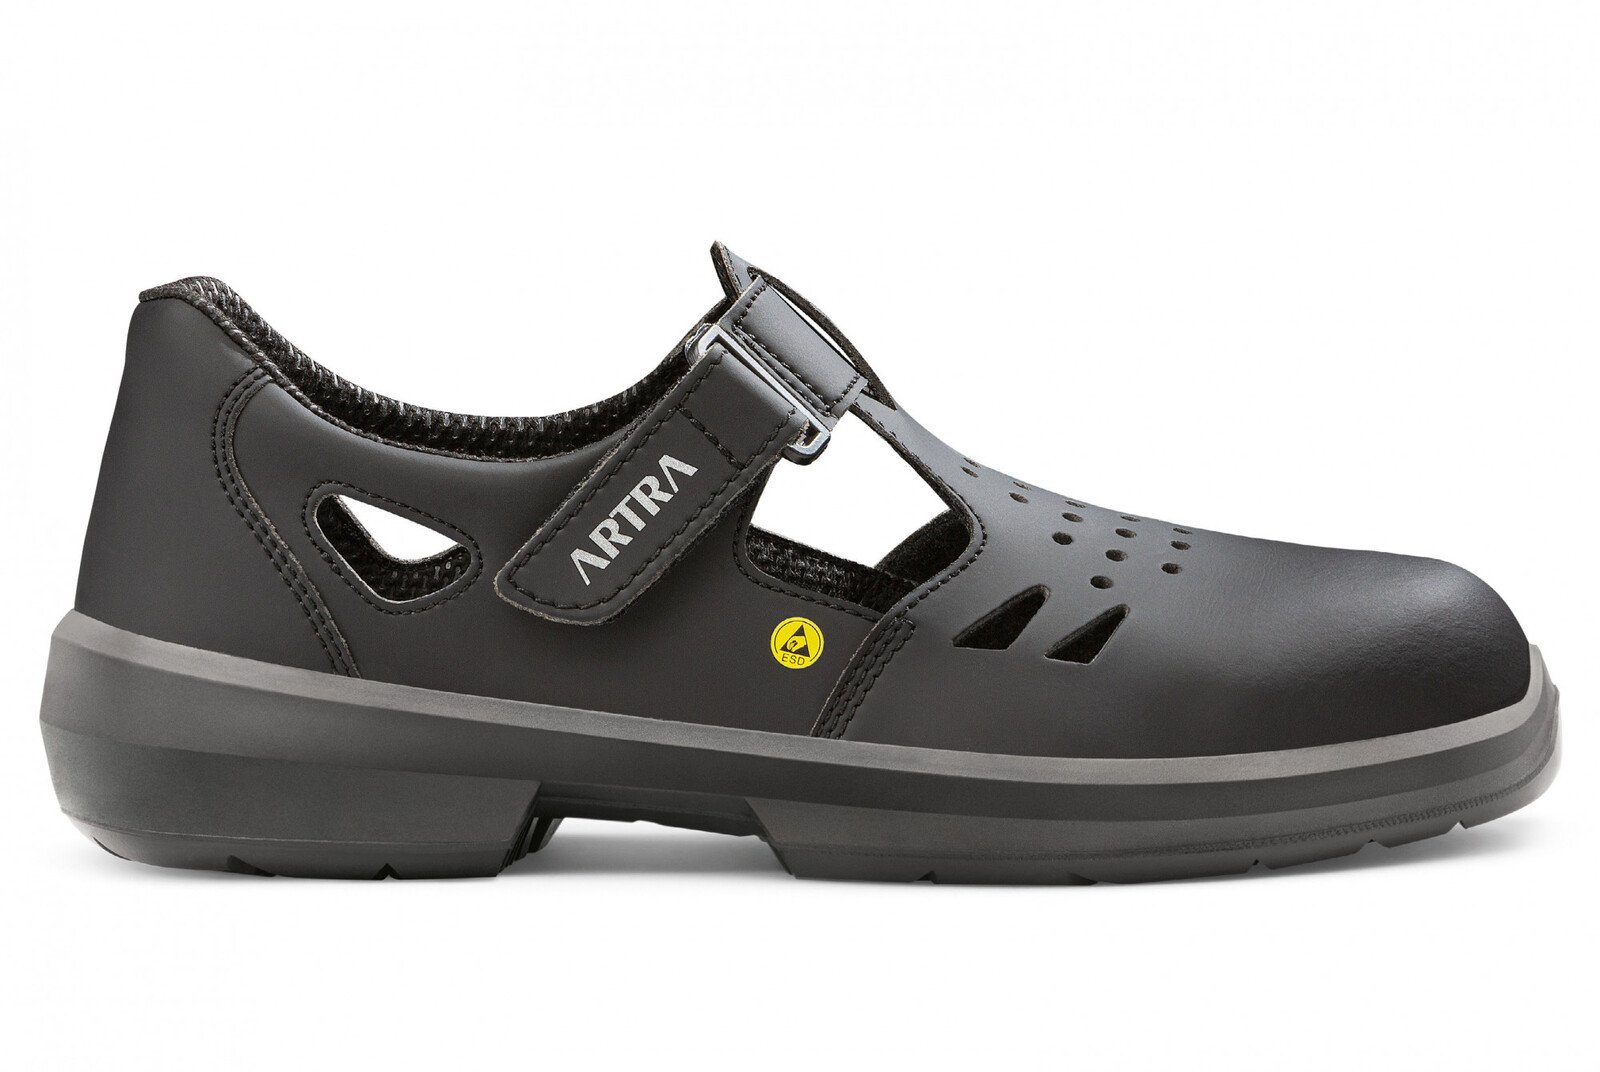 Bezpečnostné sandále Artra Armen 9008 6760 S1P SRC ESD MF - veľkosť: 45, farba: čierna